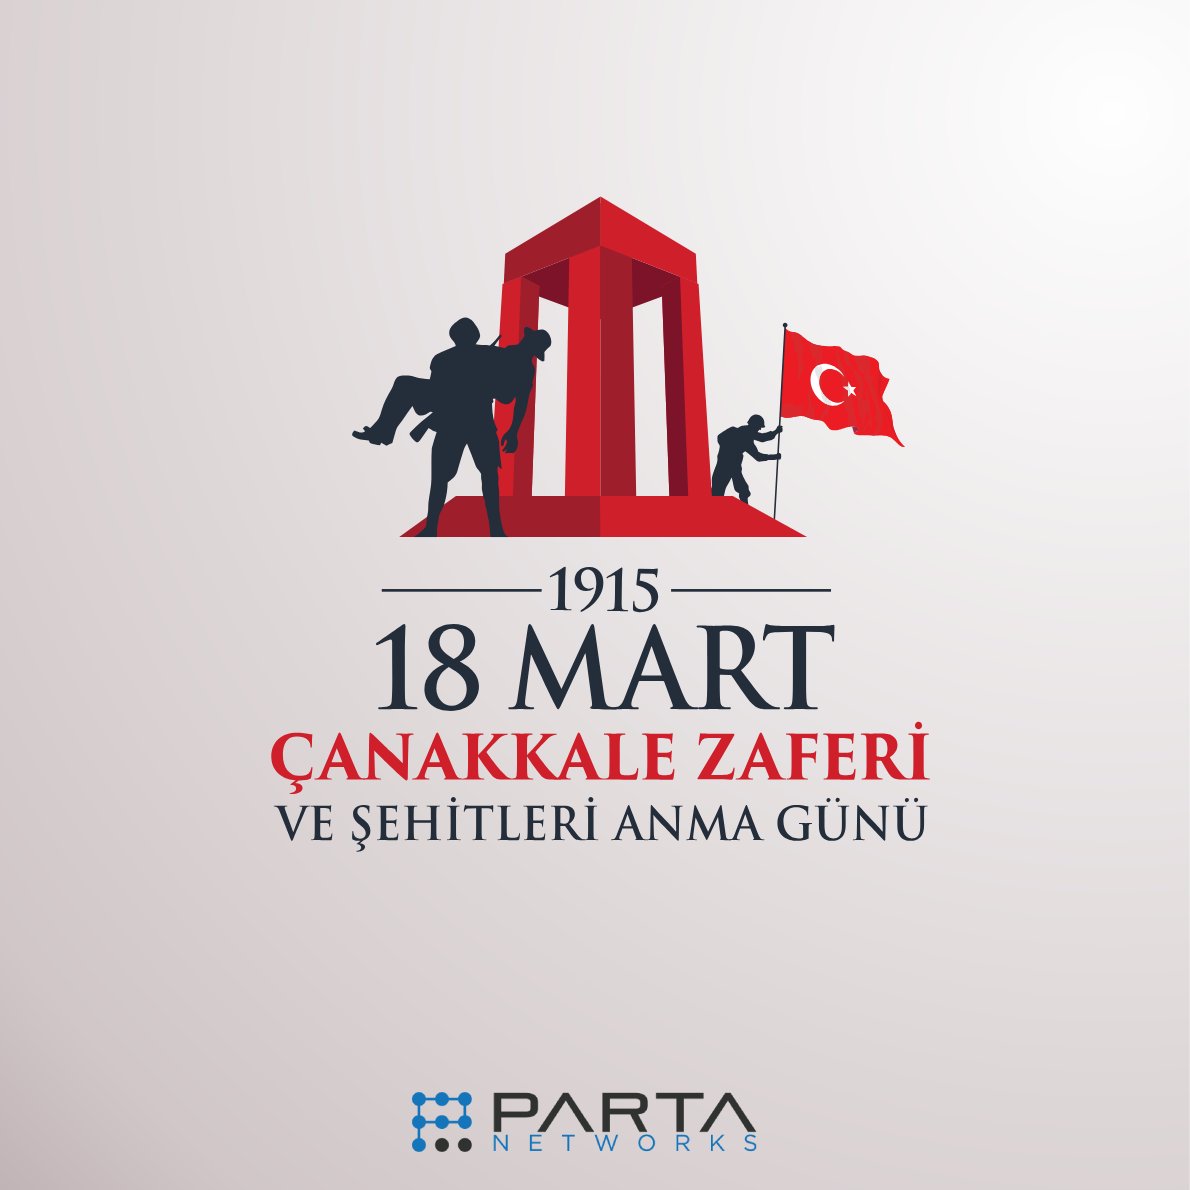 Çanakkale Zaferi'nin 109. yıl dönümünde, Kurucumuz Gazi Mustafa Kemal Atatürk başta olmak üzere, tüm şehit ve gazilerimizi saygı, minnet ve derin şükran duygularıyla anıyoruz. #18martcanakkalezaferi